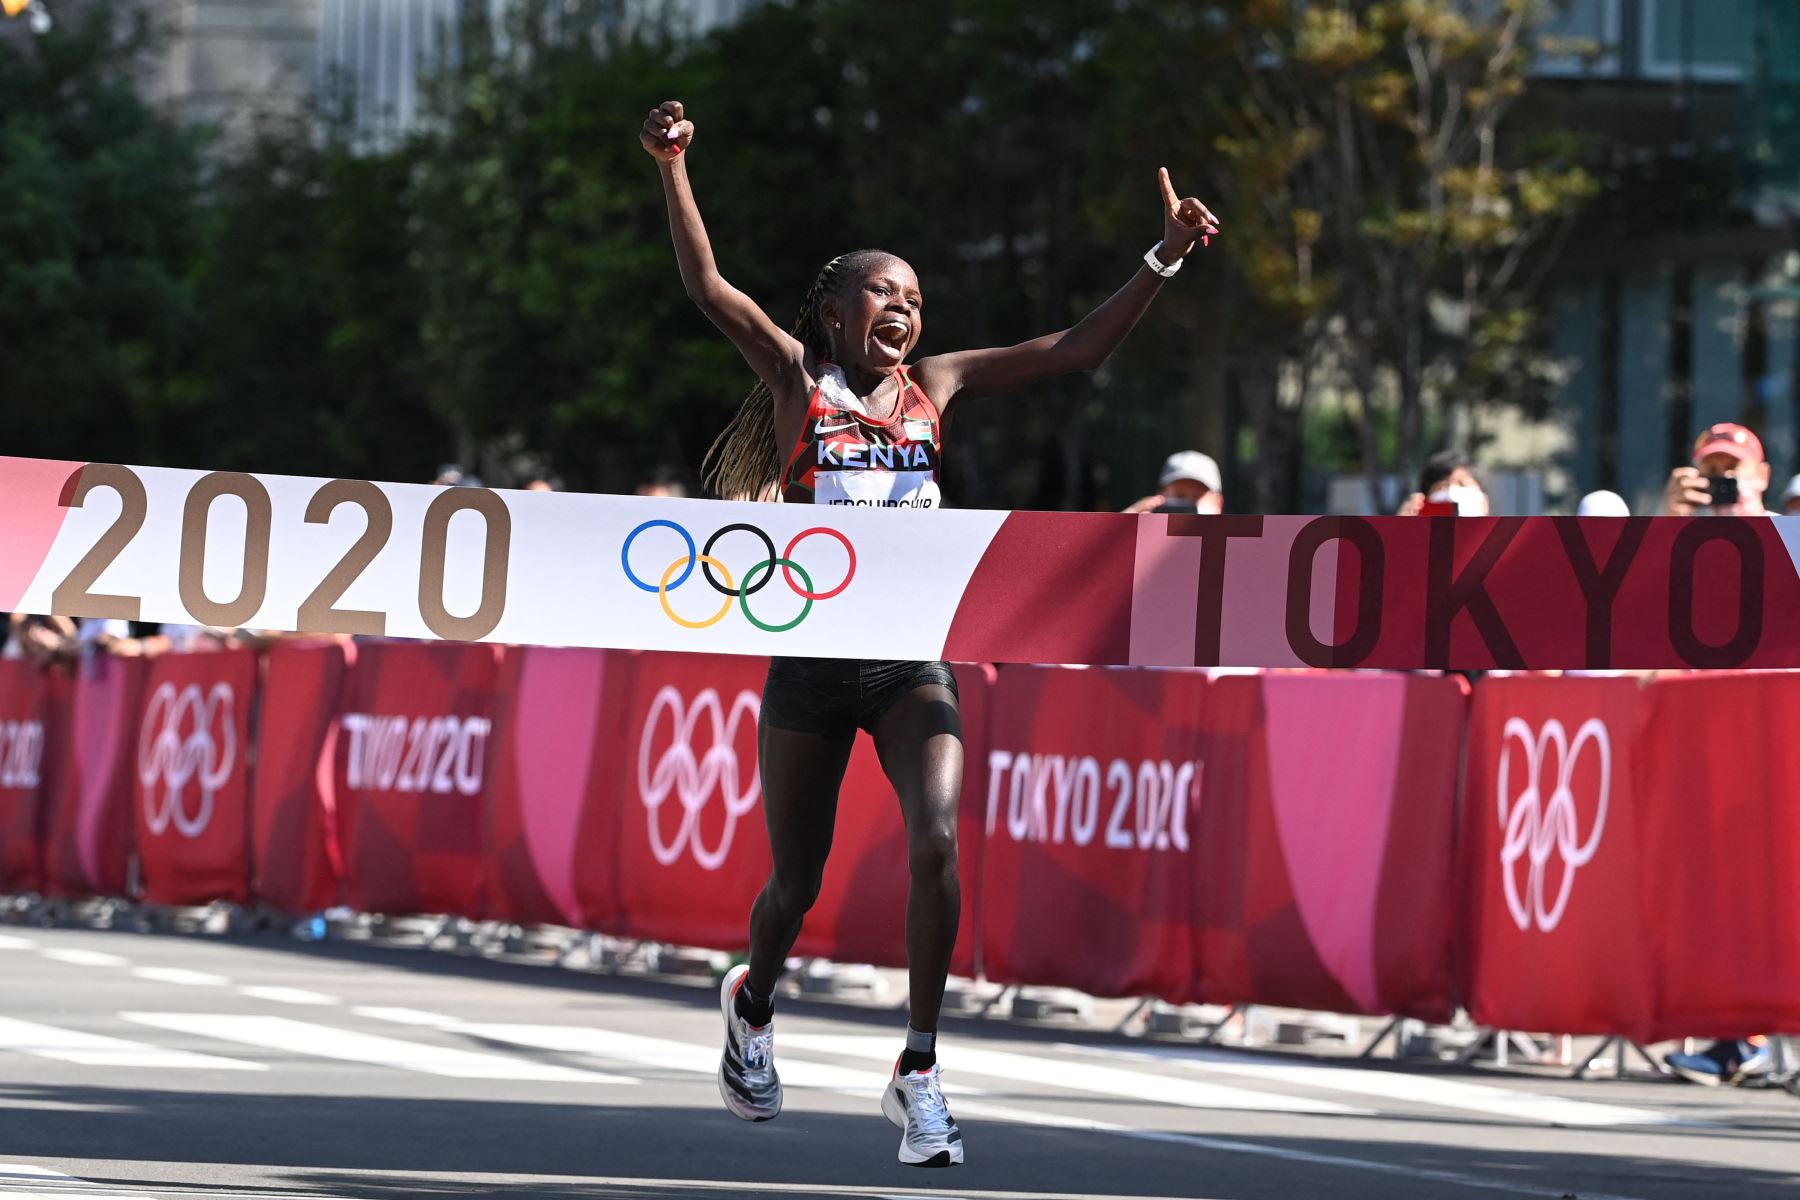 Peres Jepchirchir de Kenia gana la final del maratón femenino durante los Juegos Olímpicos de Tokio 2020 en Sapporo.
Foto: AFP